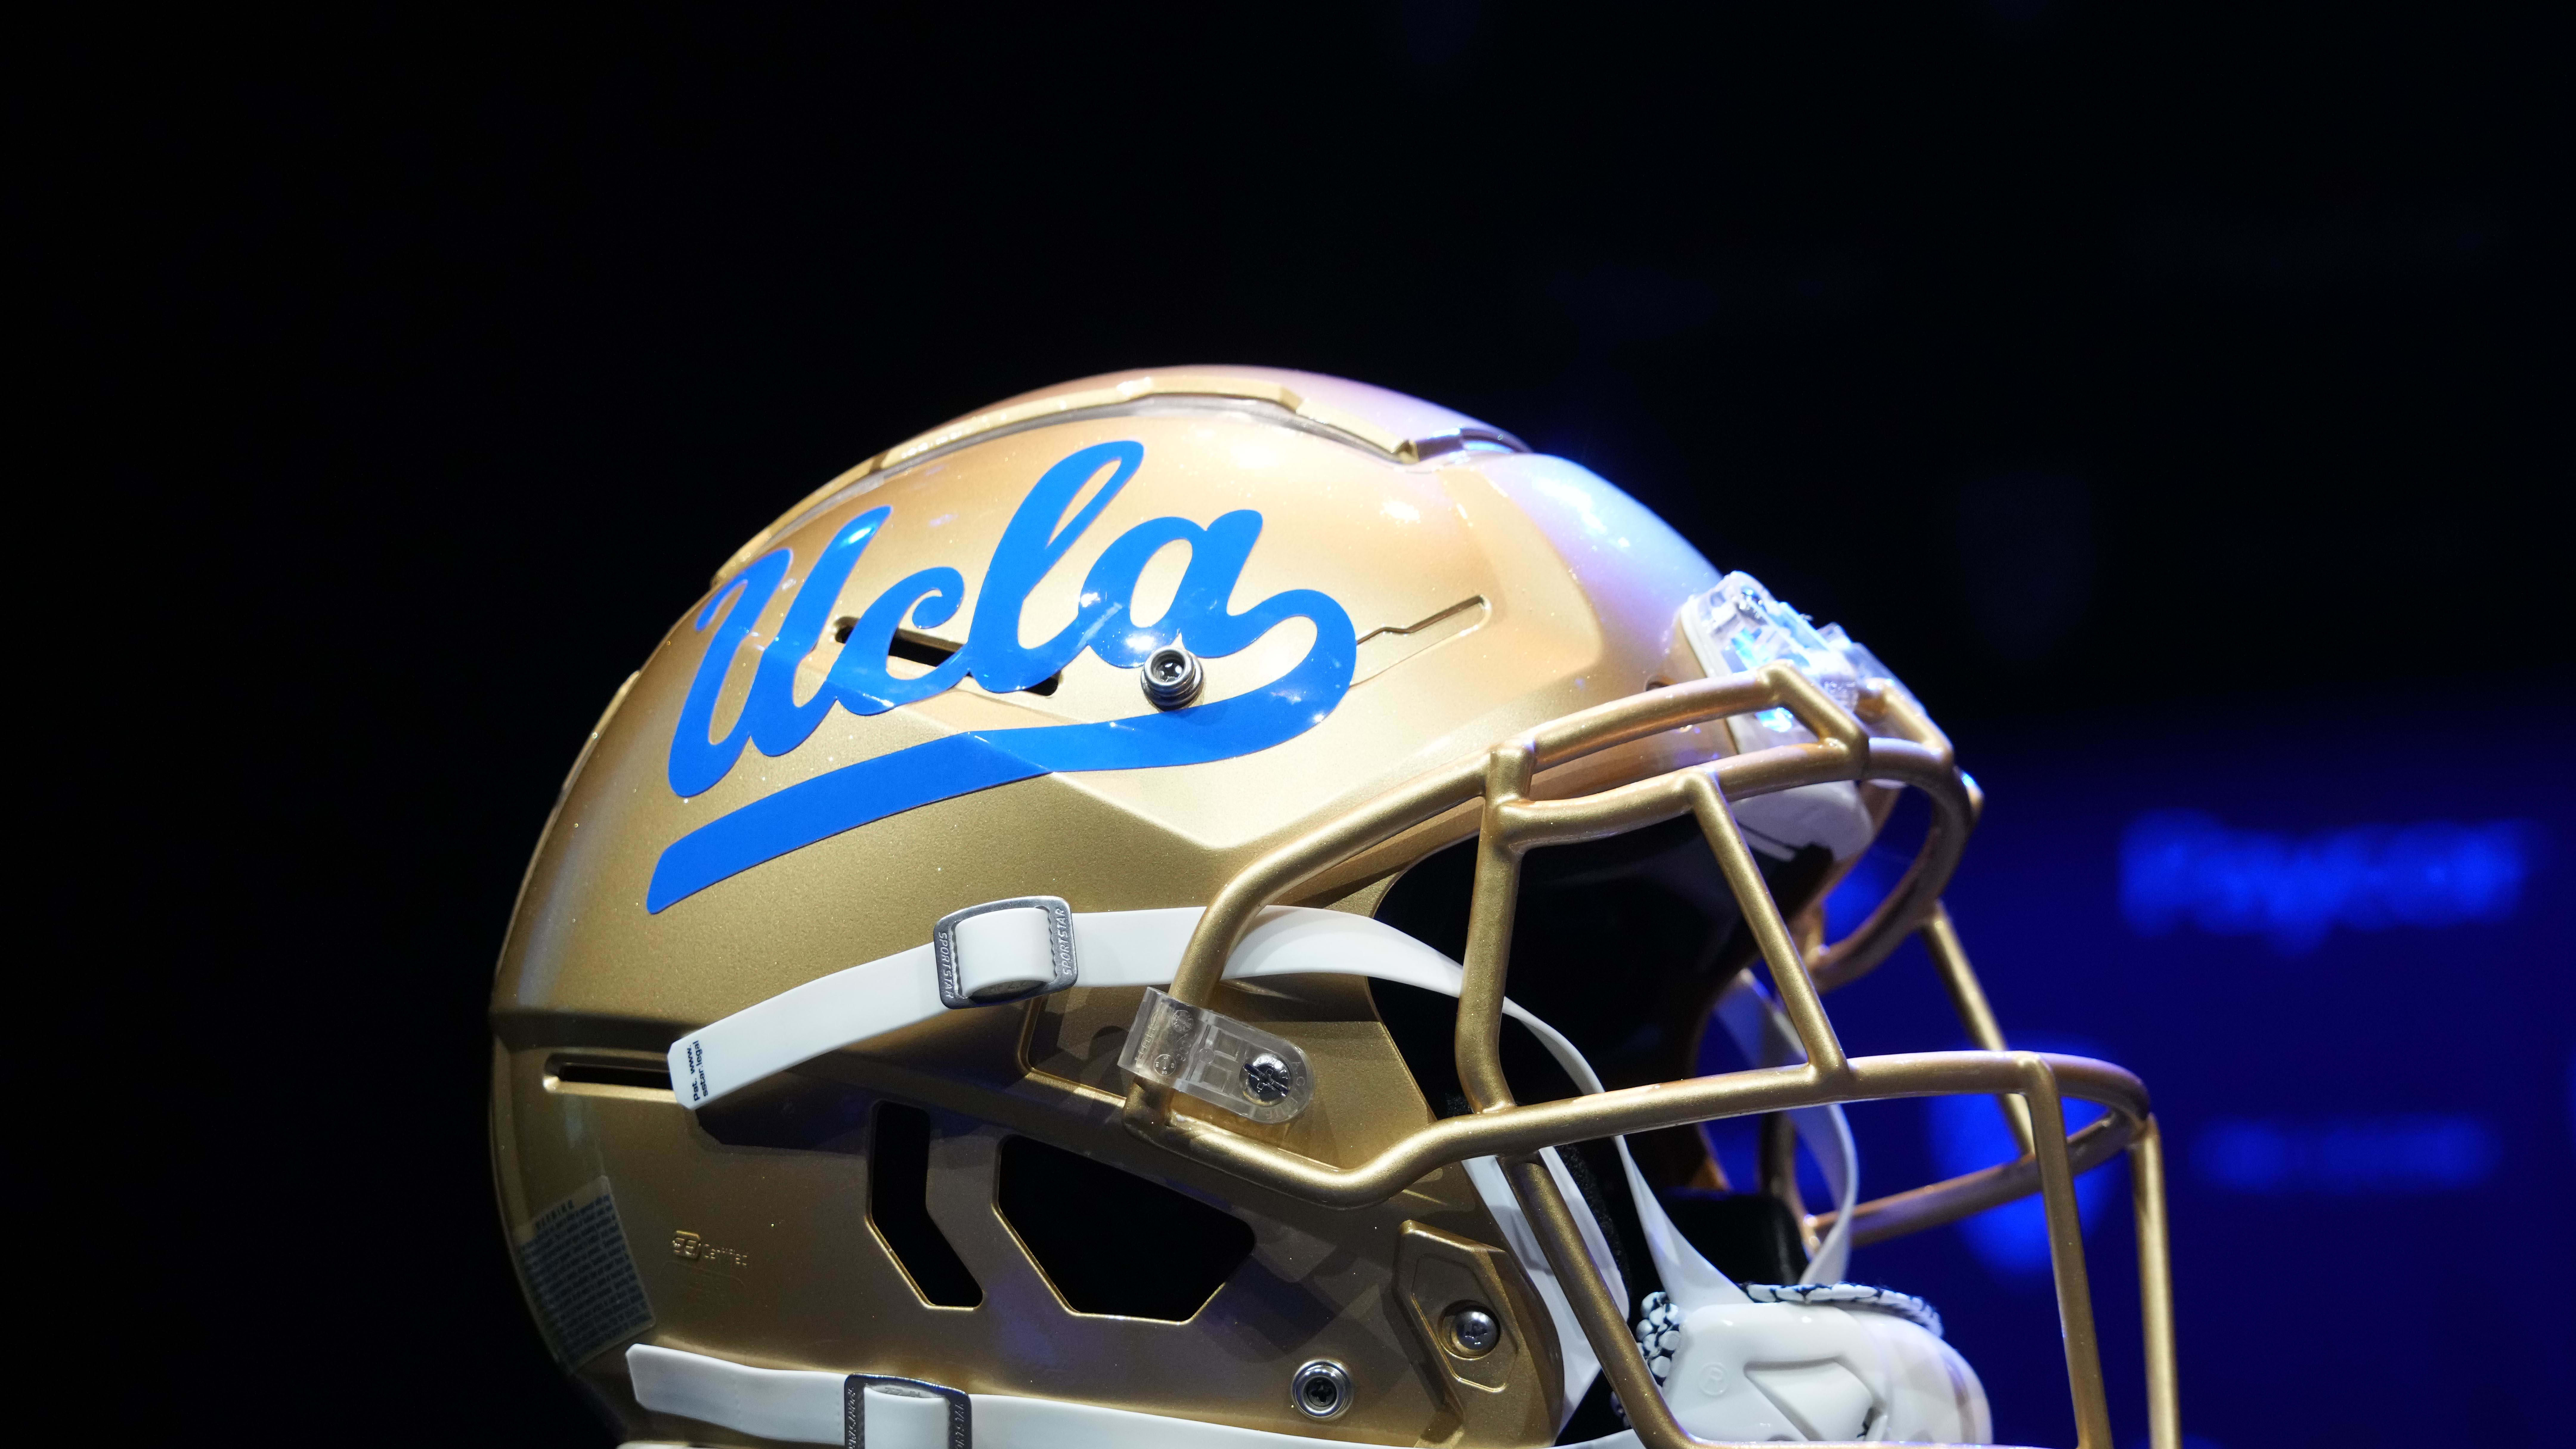 UCLA's helmet